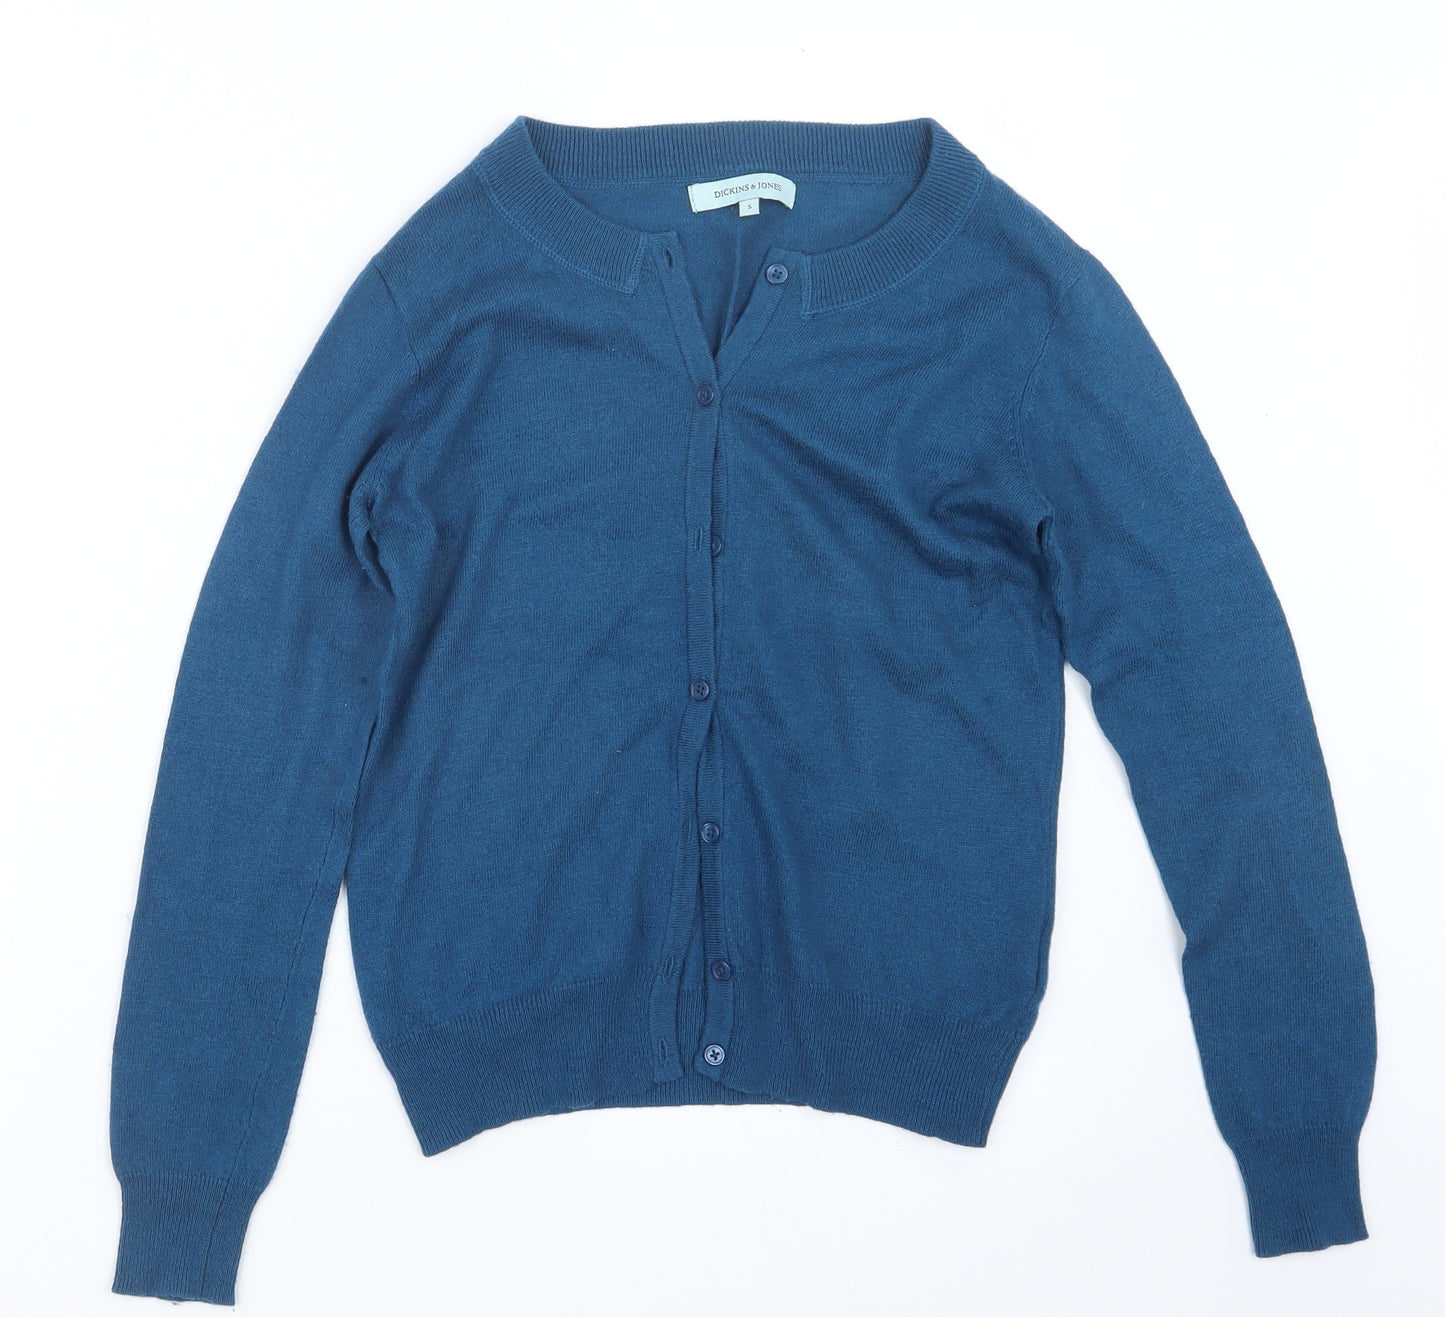 Dickins & Jones Womens Blue  Knit Cardigan Jumper Size S